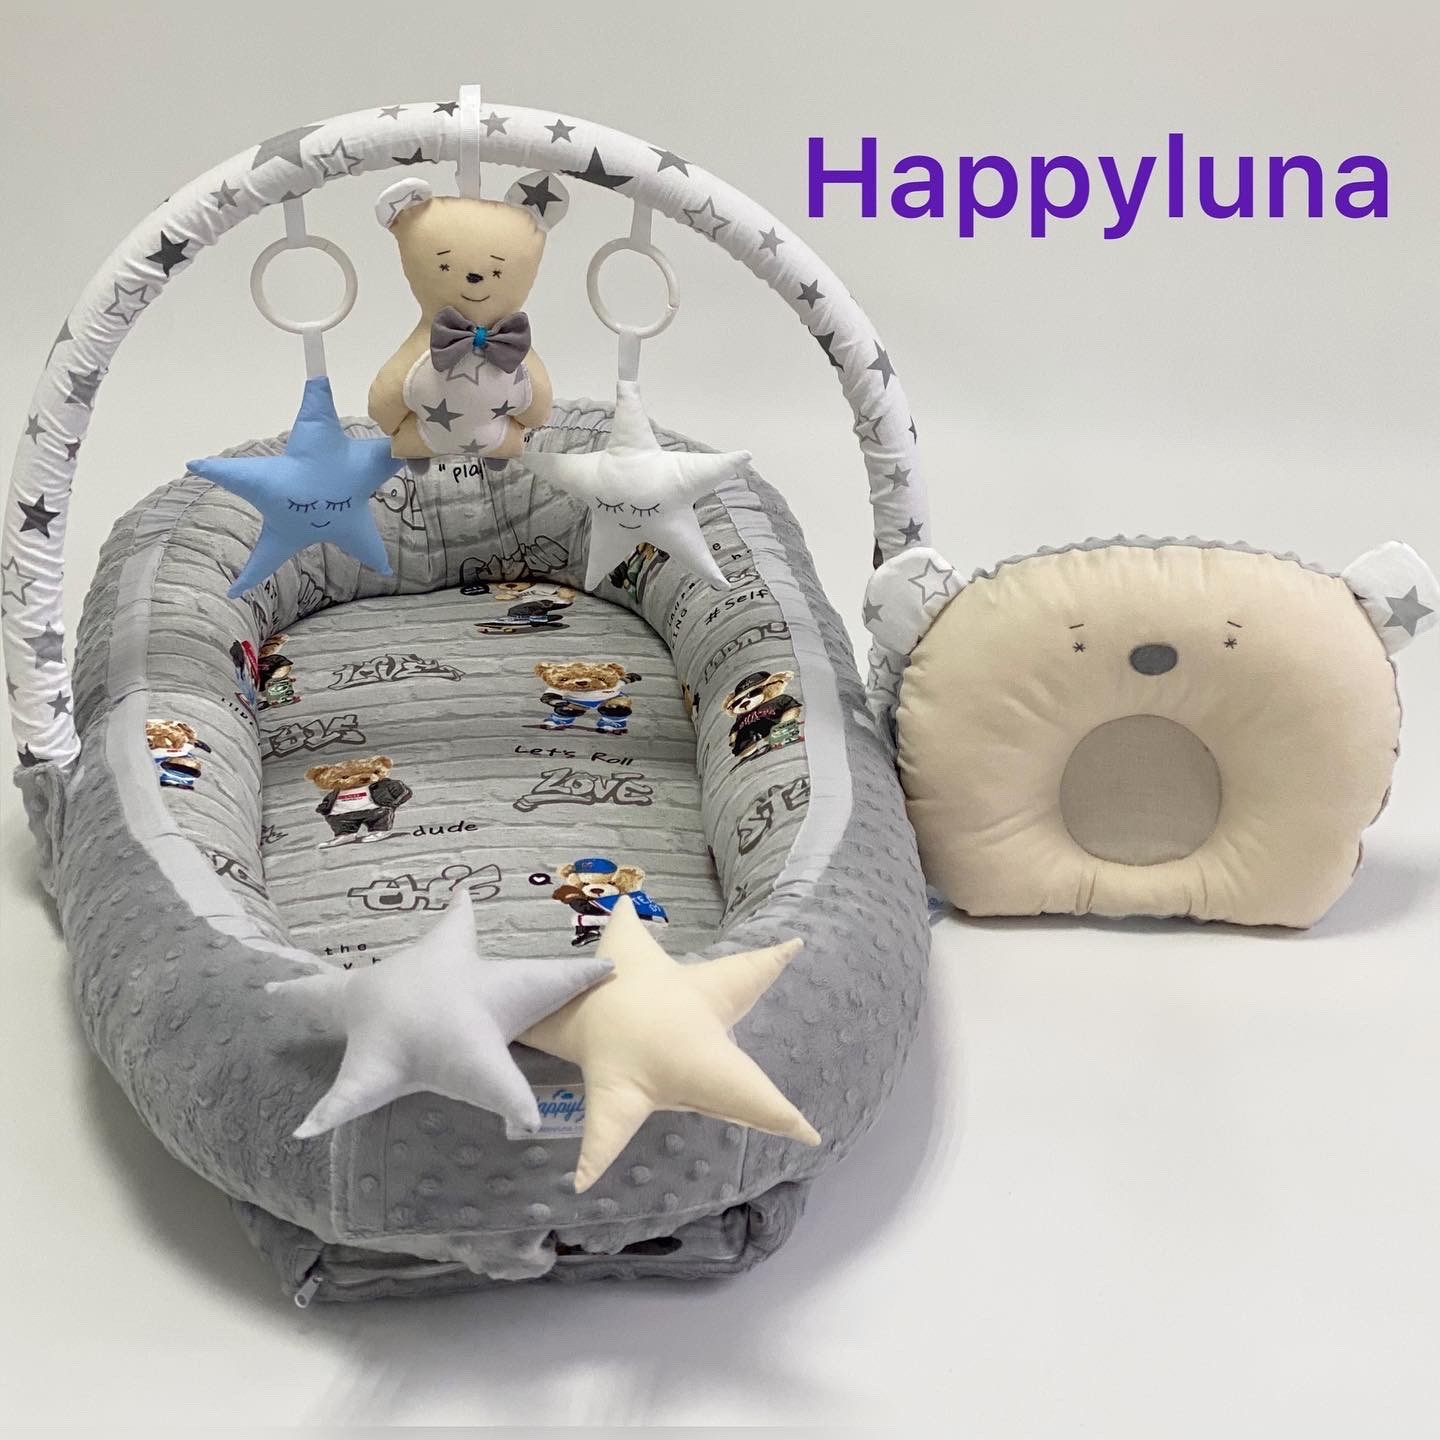 TM Happyluna Babynest for a newborn Premium "Teddy"